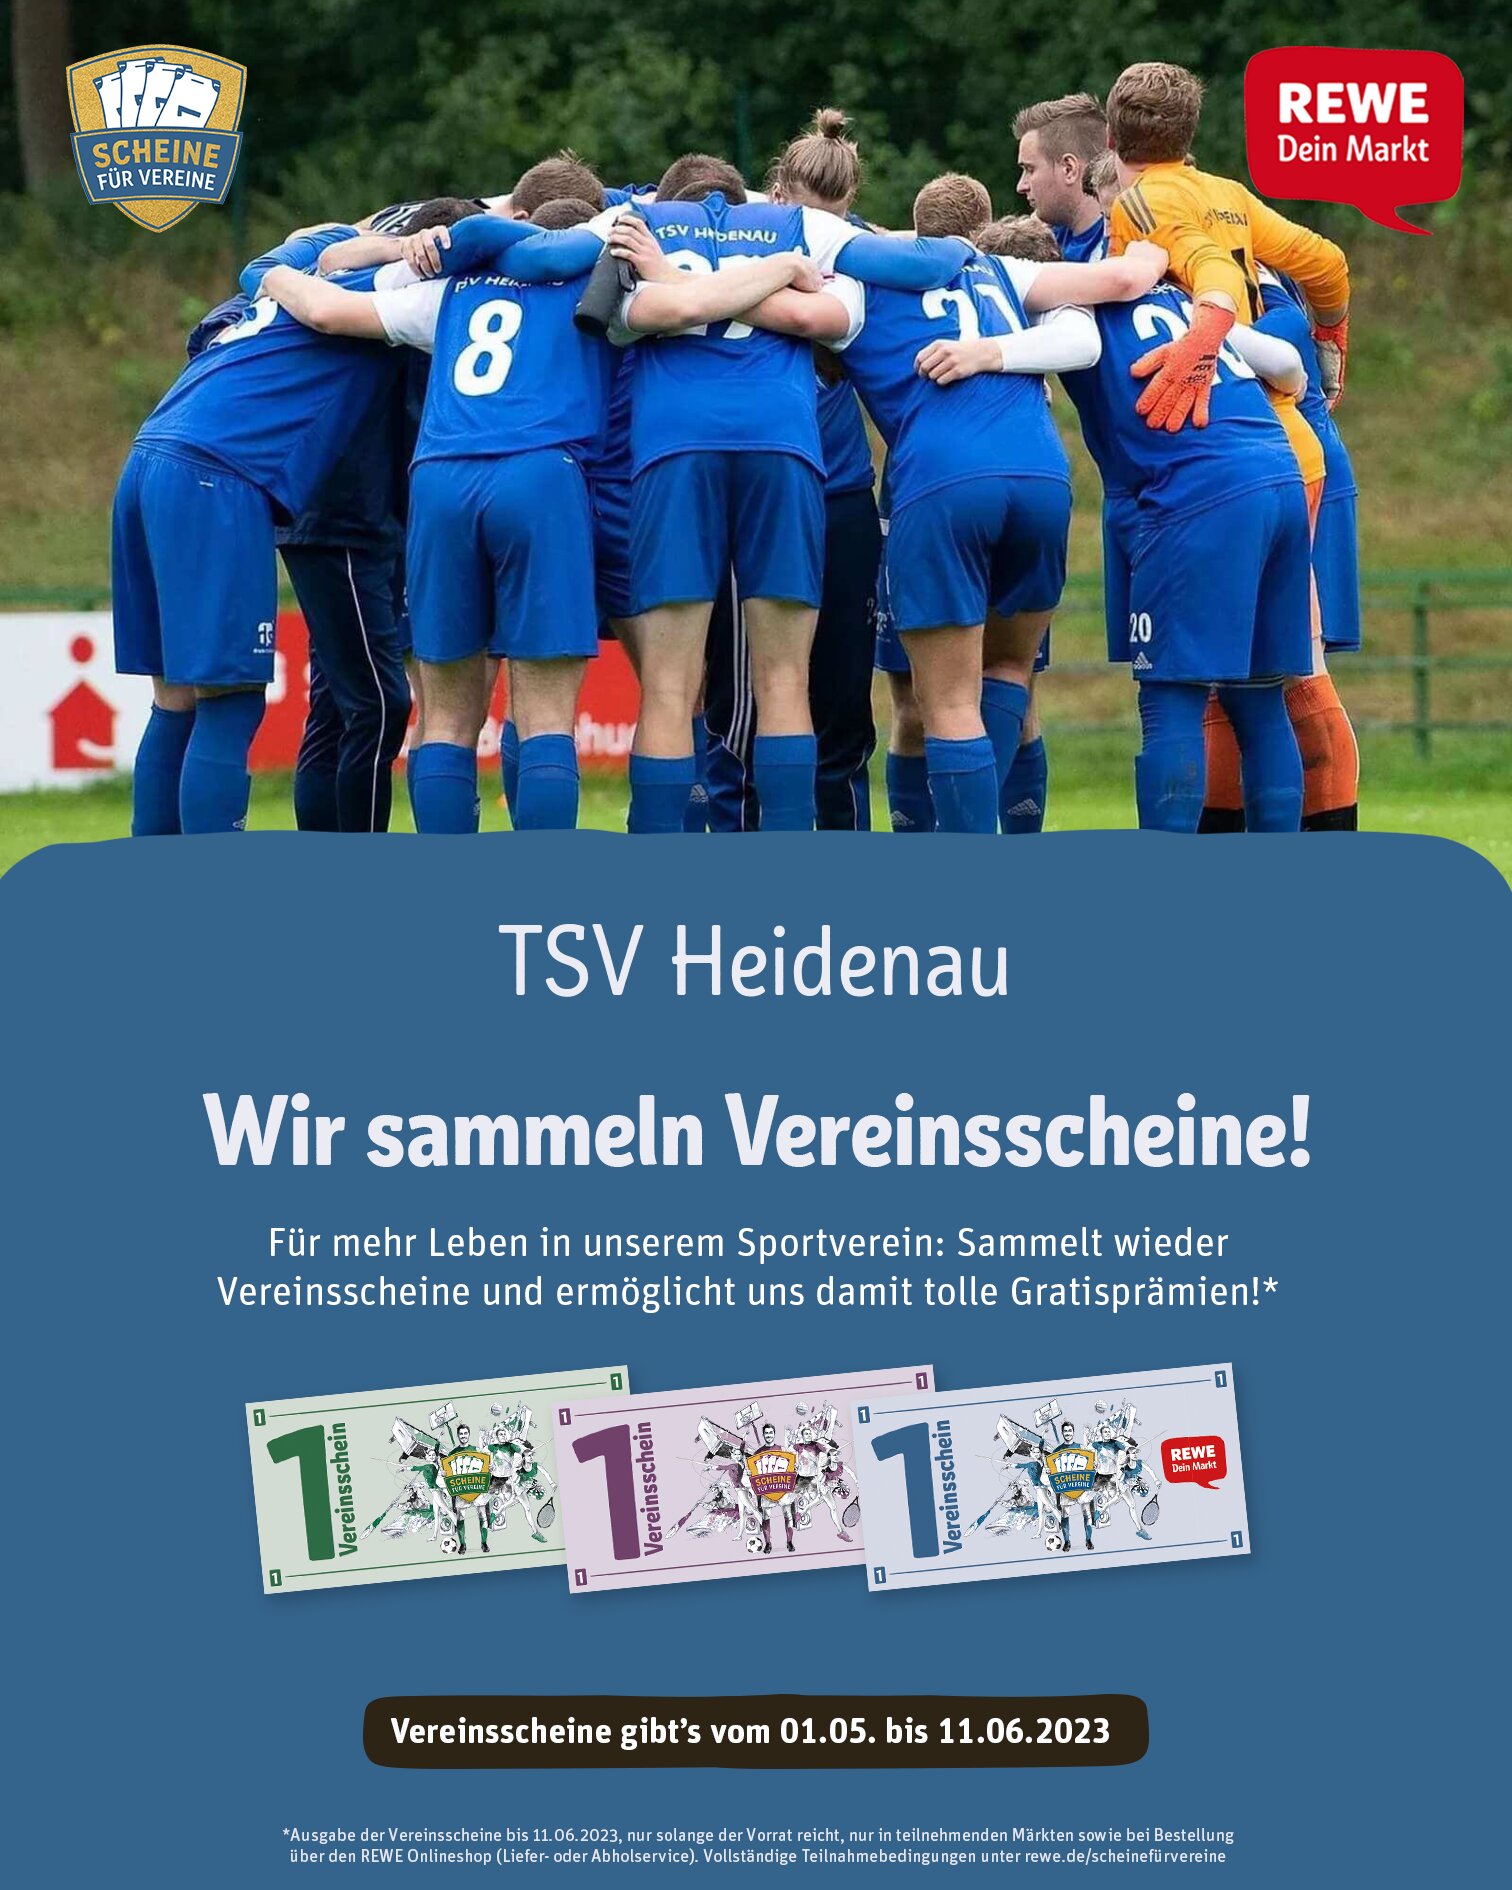 Rewe Scheine Fuer Vereine Poster Feed (1)